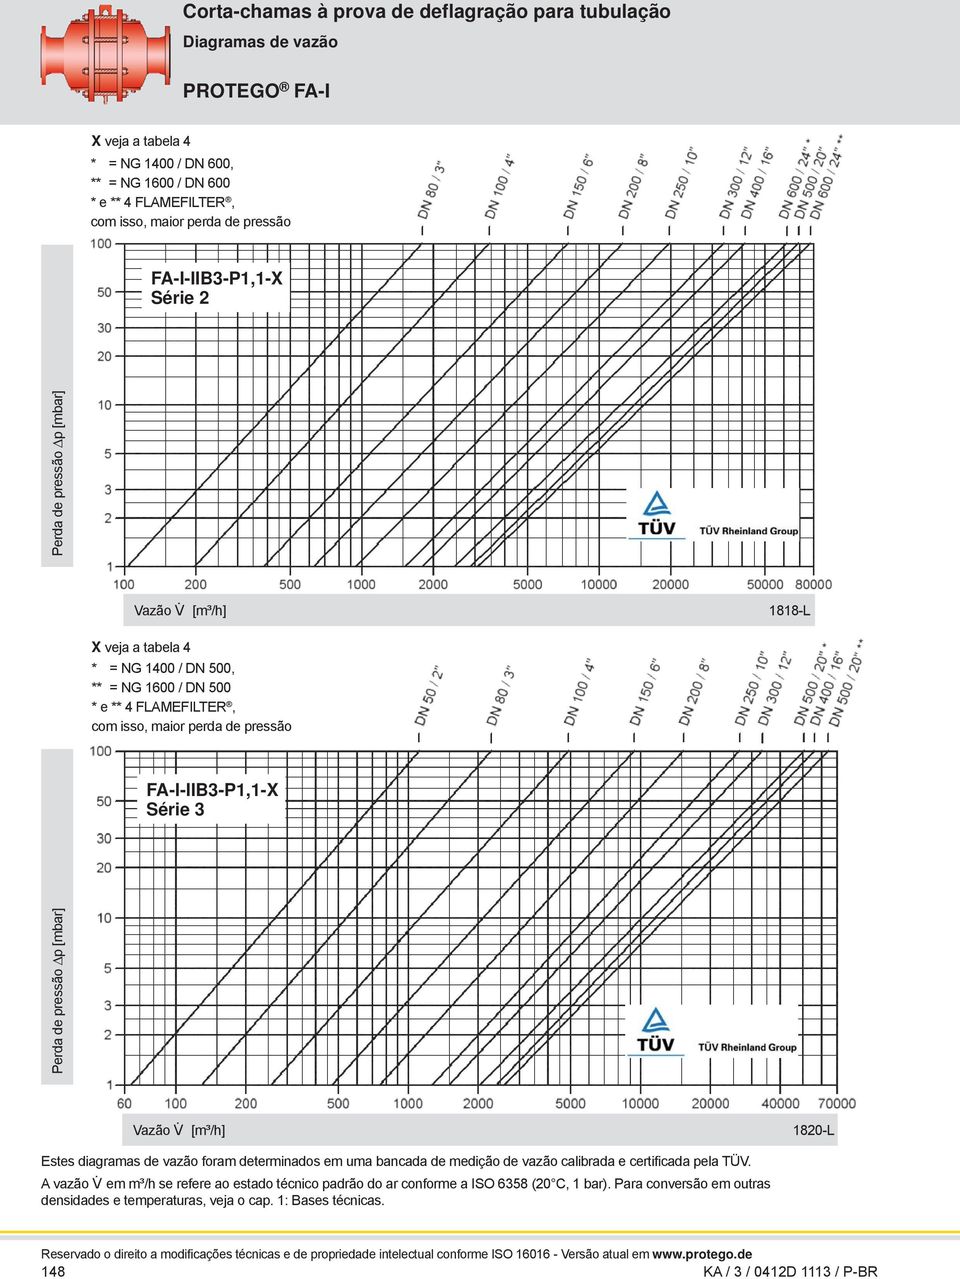 [m³/h] 1820-L Estes diagramas de vazão foram determinados em uma bancada de medição de vazão calibrada e certificada pela TÜV. A vazão V.